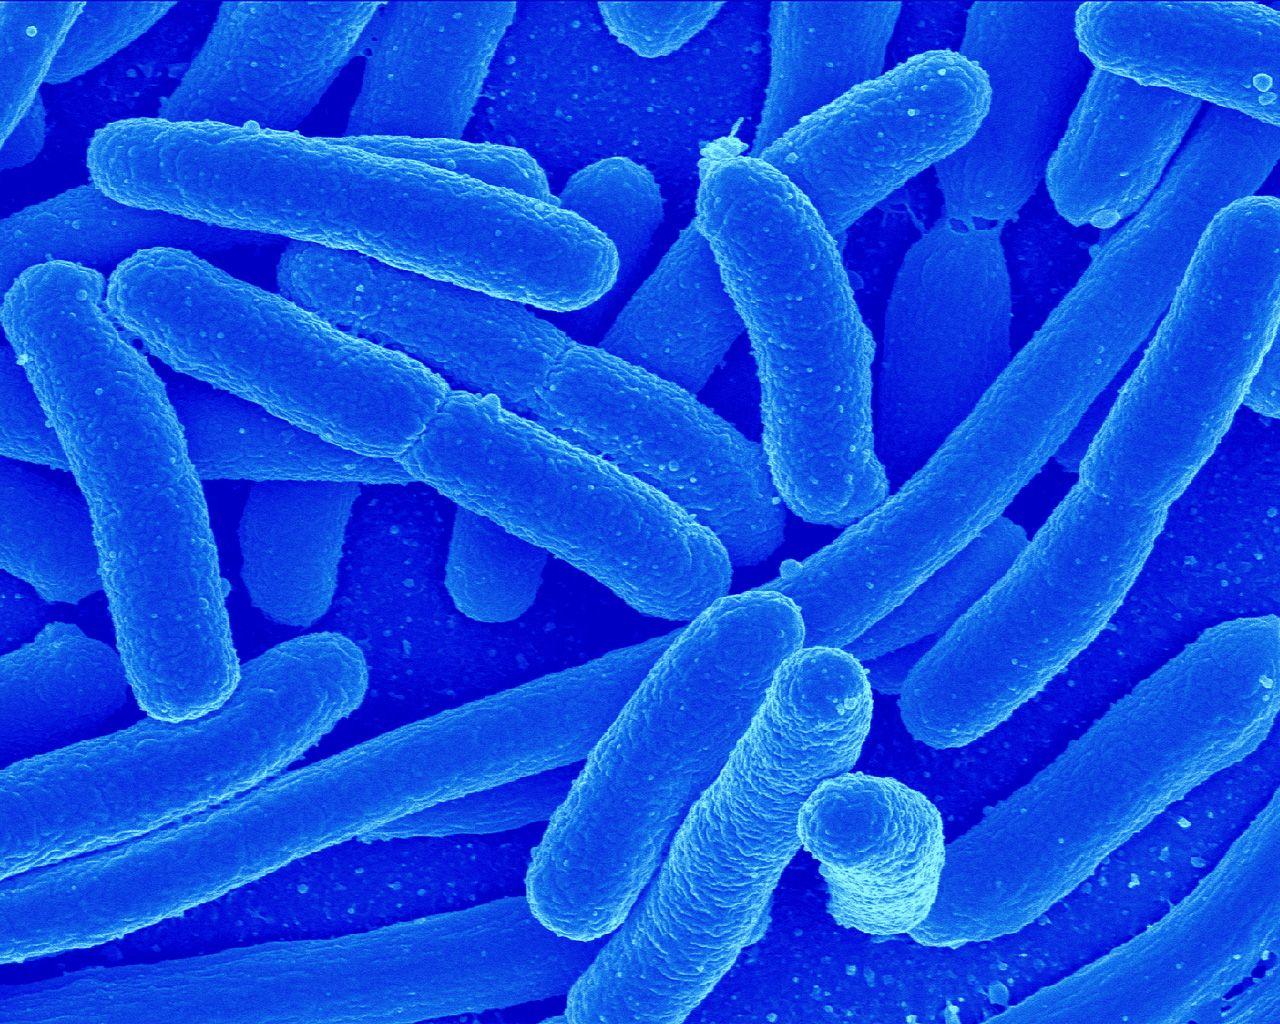 Microbes by CGKuba